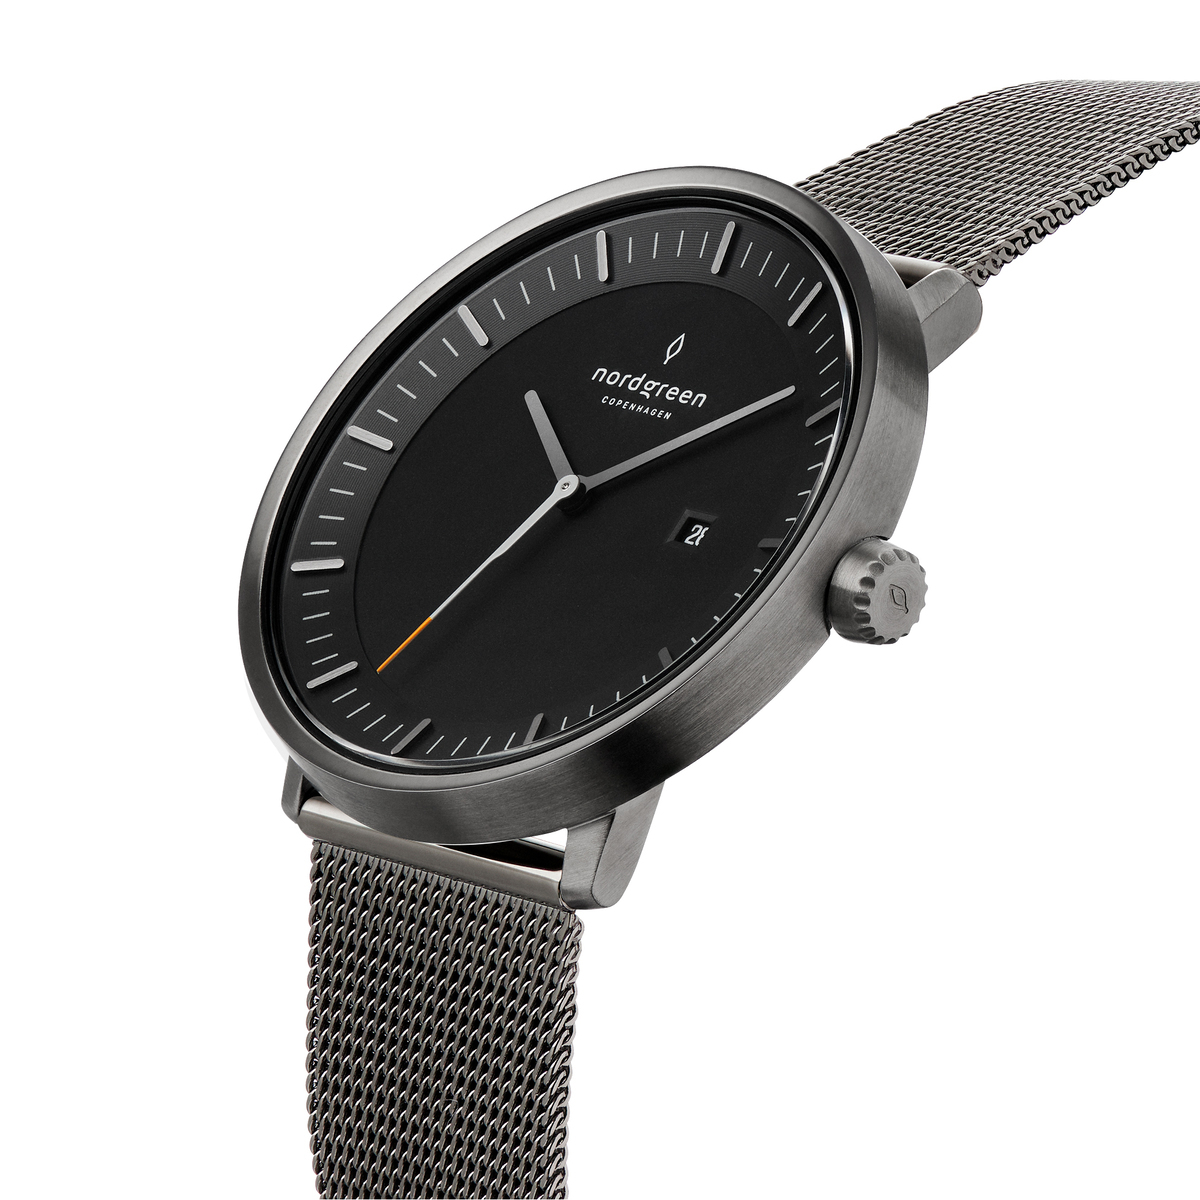 ノードグリーン Philosopher 36mm腕時計(アナログ) - 腕時計(アナログ)